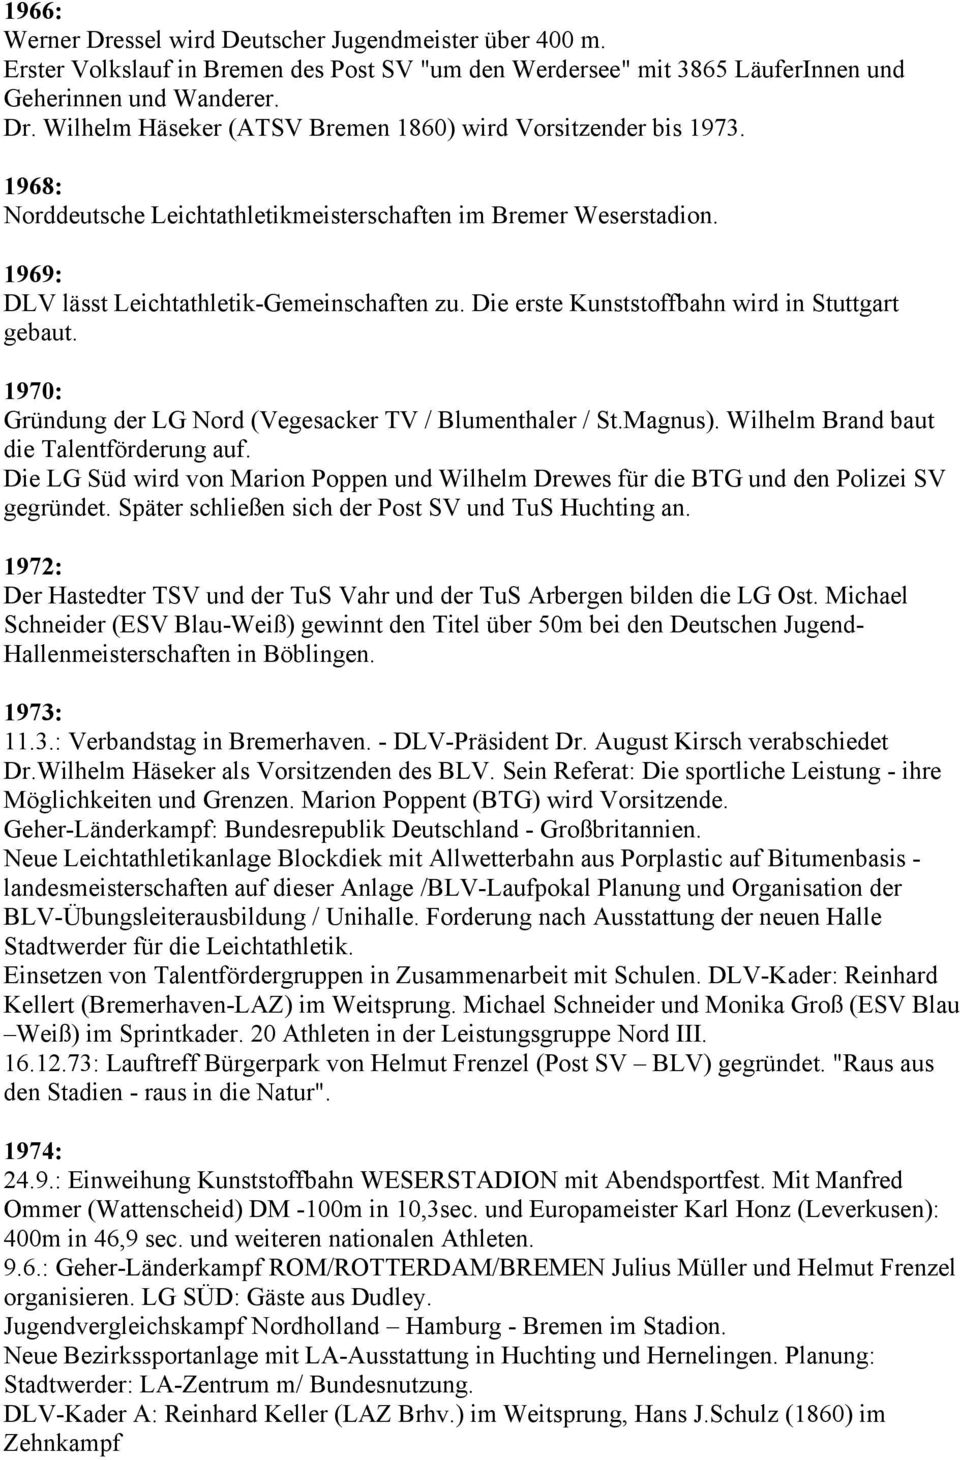 1970: Gründung der LG Nord (Vegesacker TV / Blumenthaler / St.Magnus). Wilhelm Brand baut die Talentförderung auf.